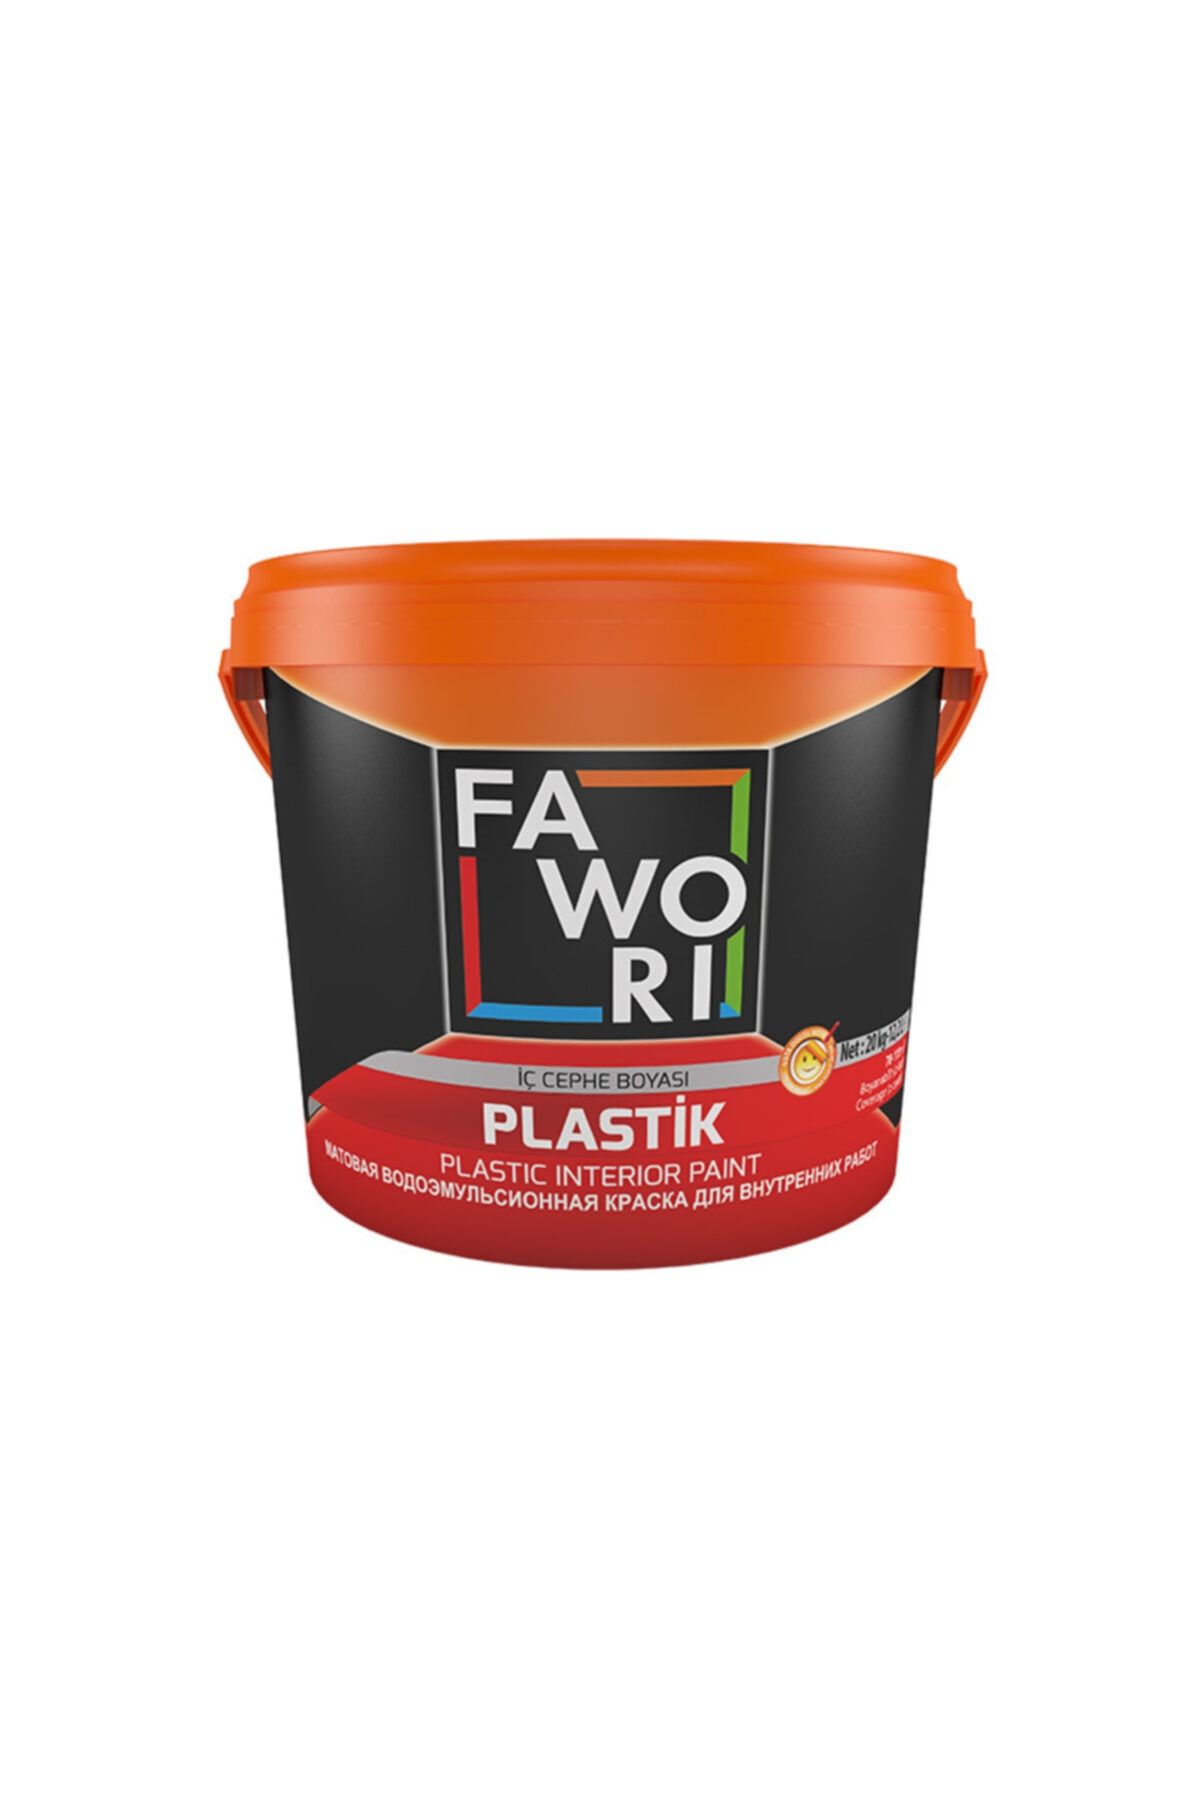 Fawori Plastik Iç Cephe Boyası 3,5 kg Peri Bacası